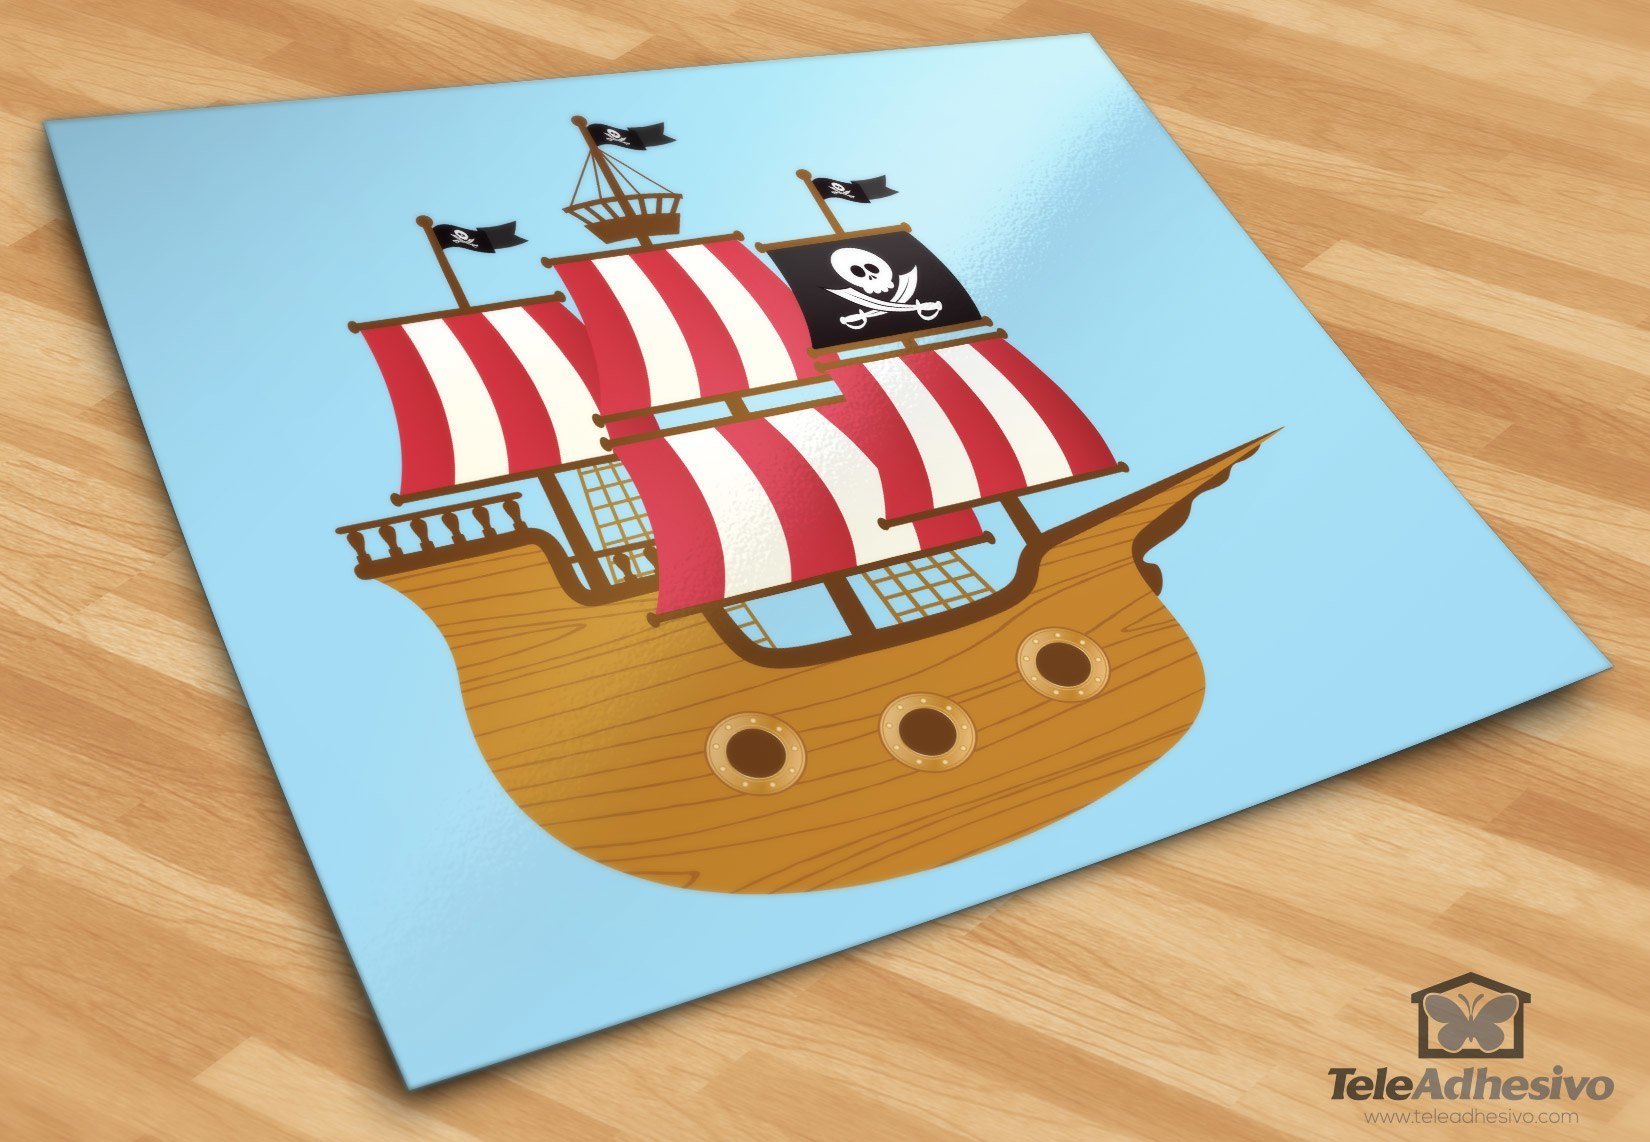 Kinderzimmer Wandtattoo: Kleine Piratenboot